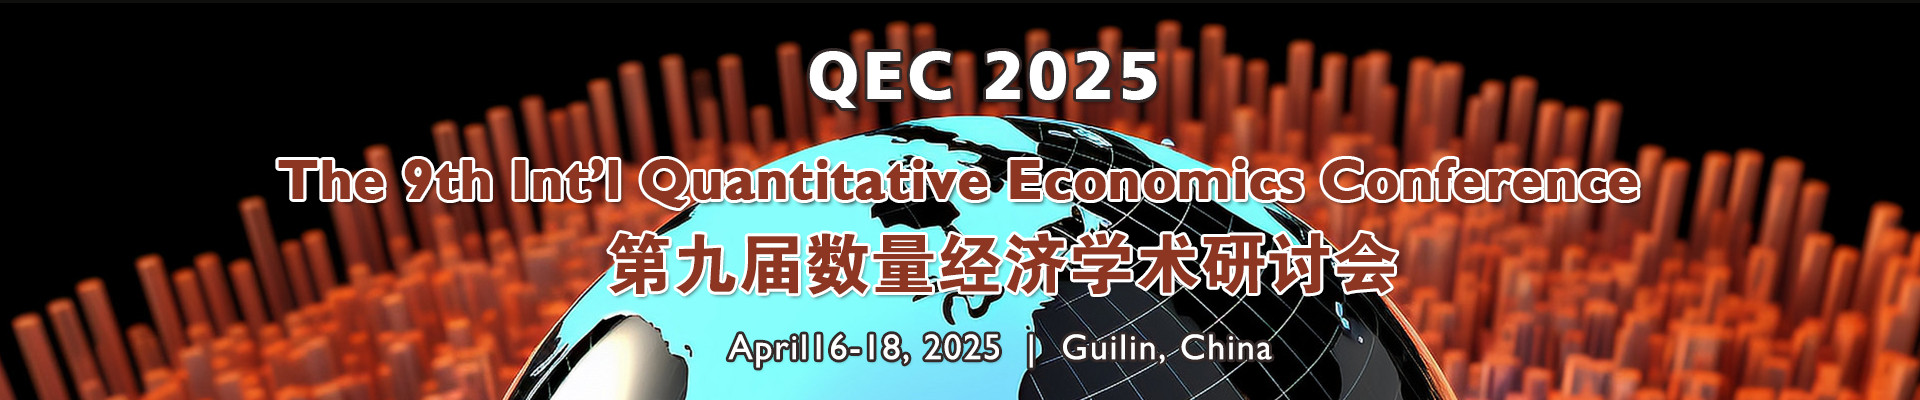 第九届数量经济学国际学术研讨会(QEC 2025)